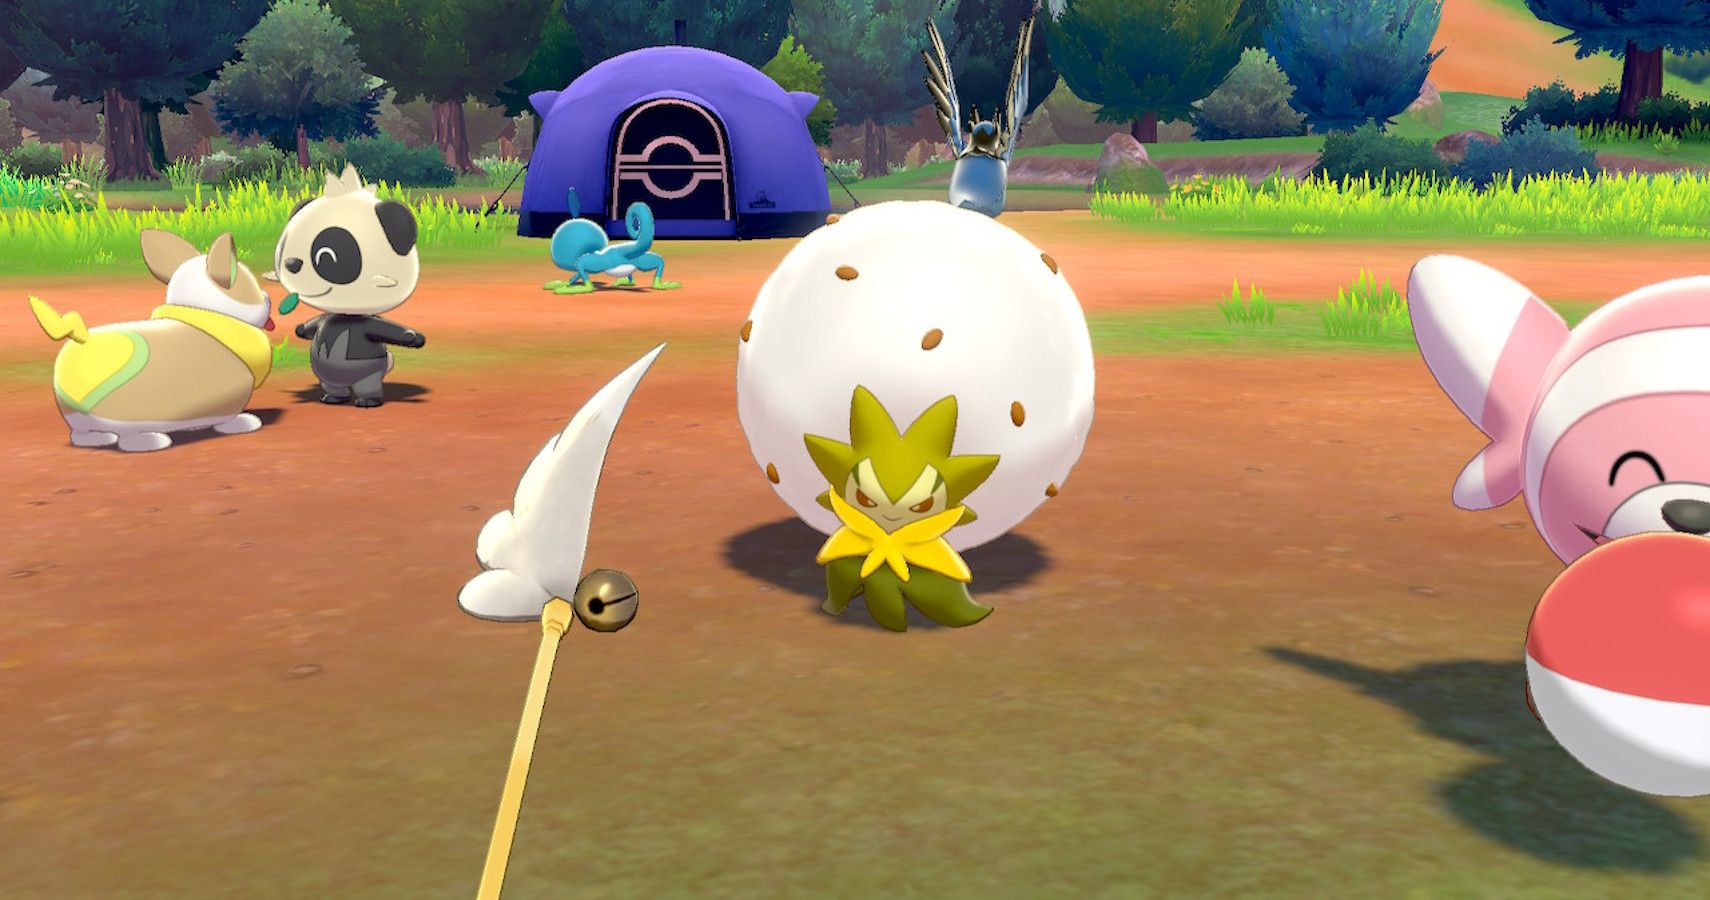 Pokémon Sword & Shield: How To Get More Camp Toys